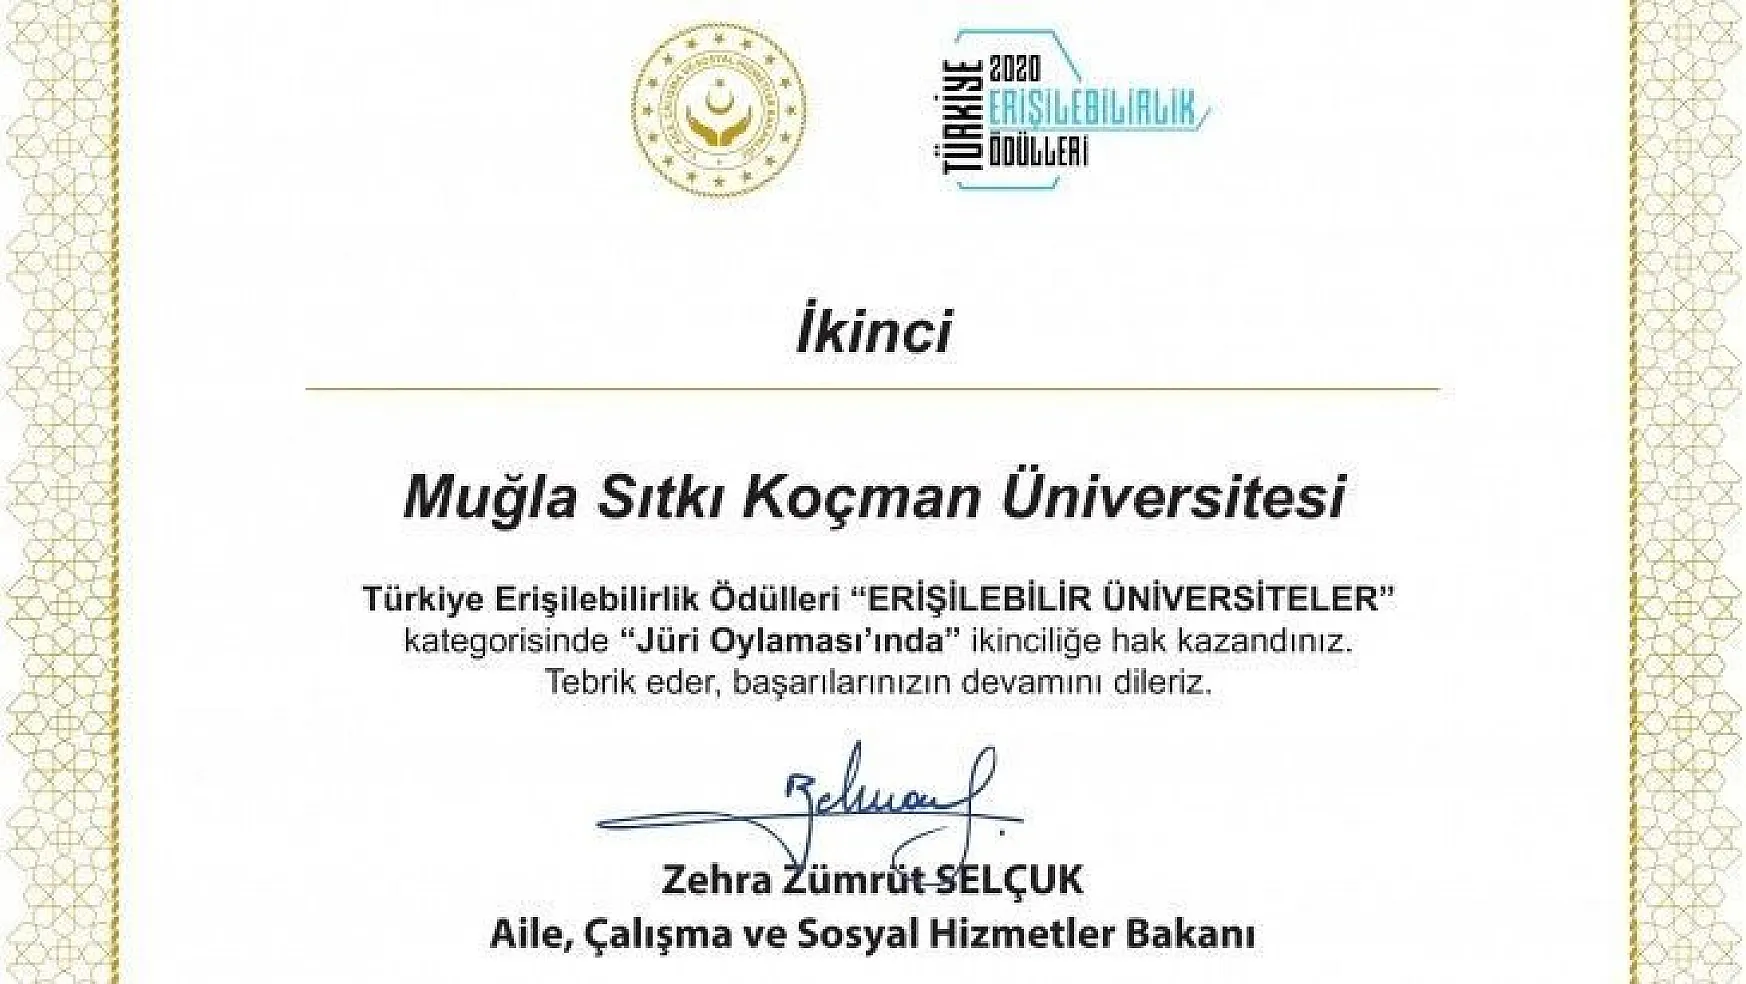 Muğla Sıtkı Koçman Üniversitesi'ne büyük ödül